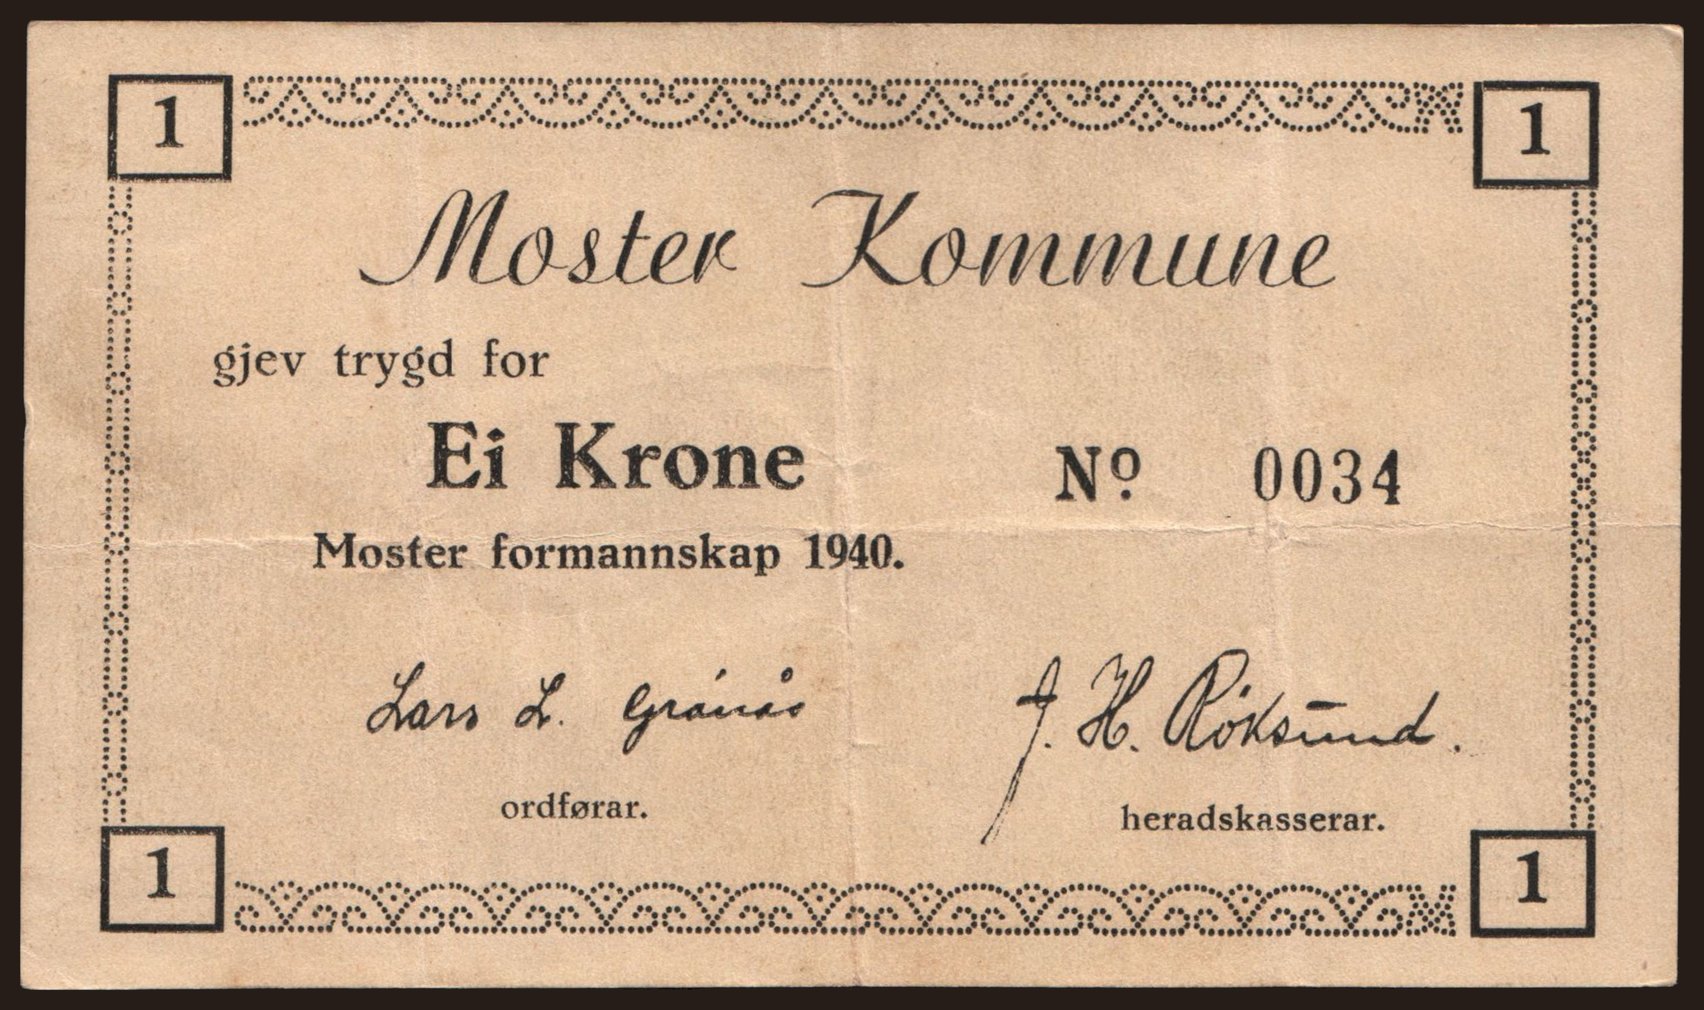 Moster Kommune, 1 krone, 1940